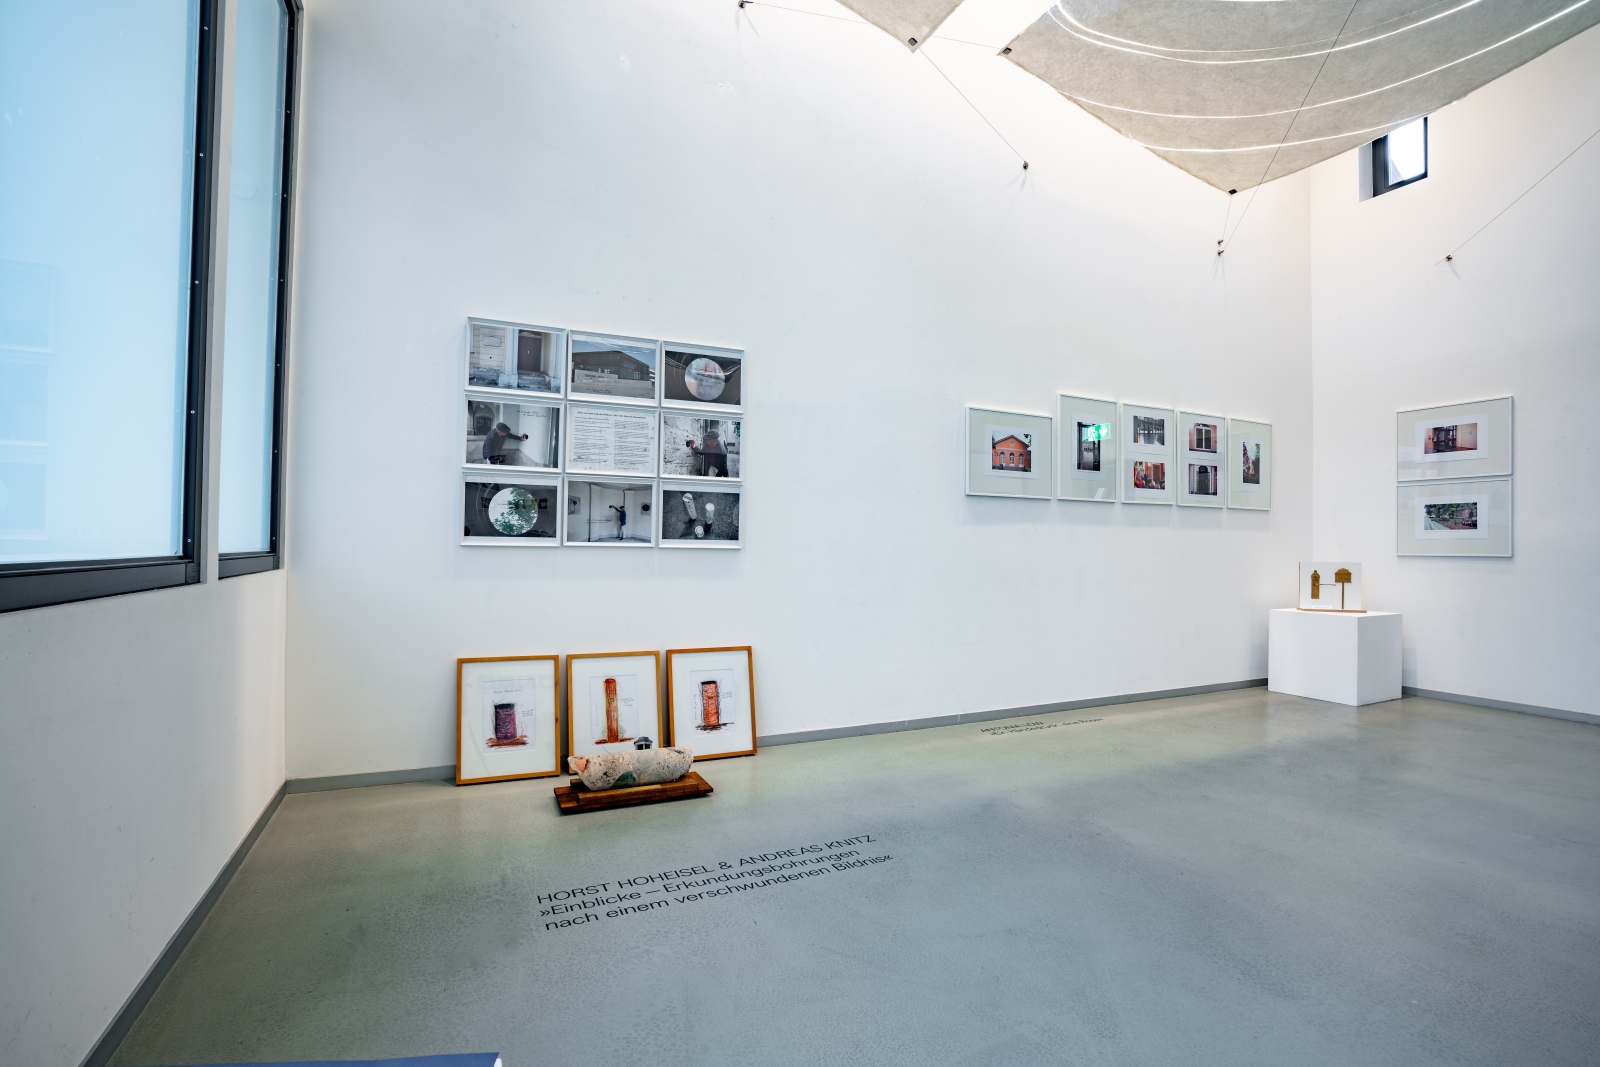 Der obere Ausstellungsraum des Jenaer Kunstverein: In dem hellen Raum ist Links der Entwürf von Hoheisel und Knitz mit dem Bohrkern im Zentrum und im Hintergrund, rechts davon der Entwurf von Antonia Low mit der Türklinke zu sehen.